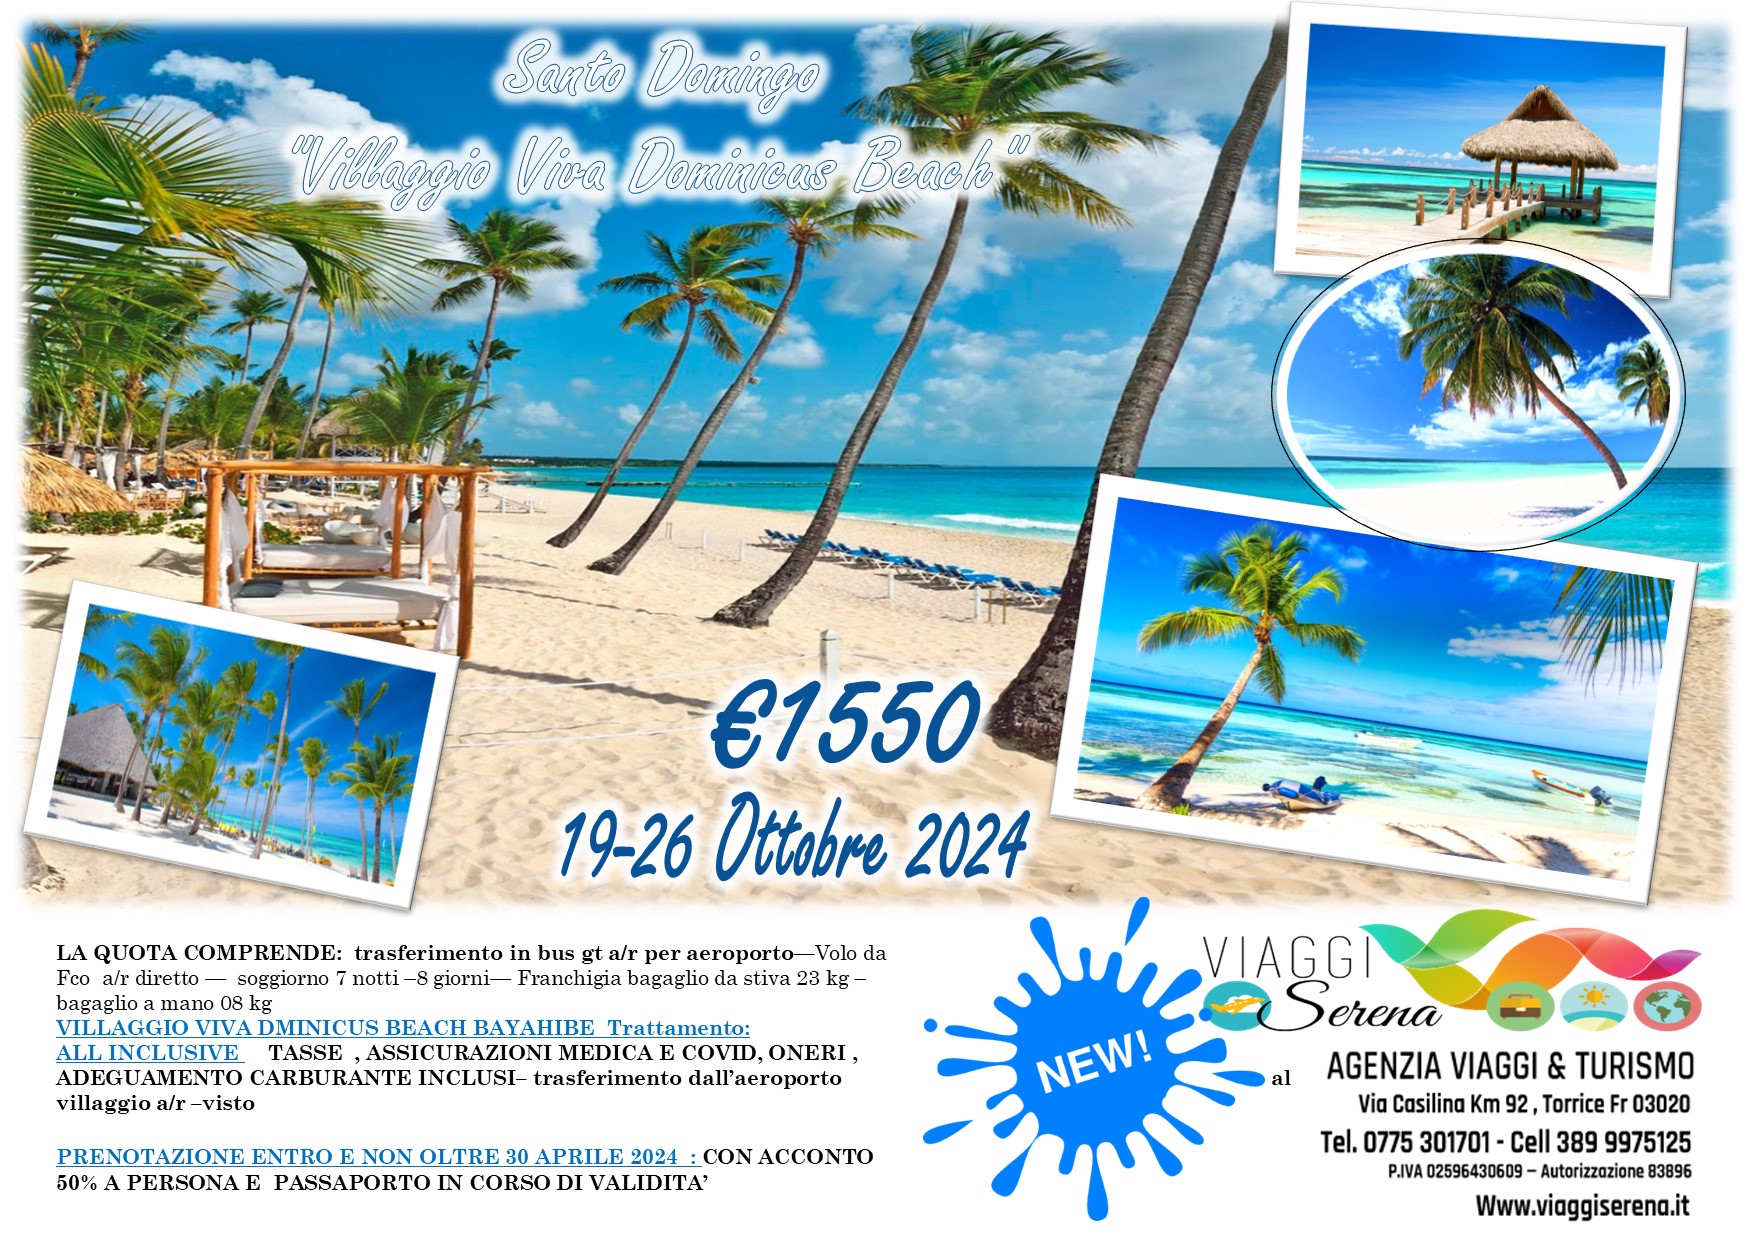 Viaggi di gruppo: Villaggio mare CARAIBI Santo Domingo 19-26 Ottobre 2024  €1550,00